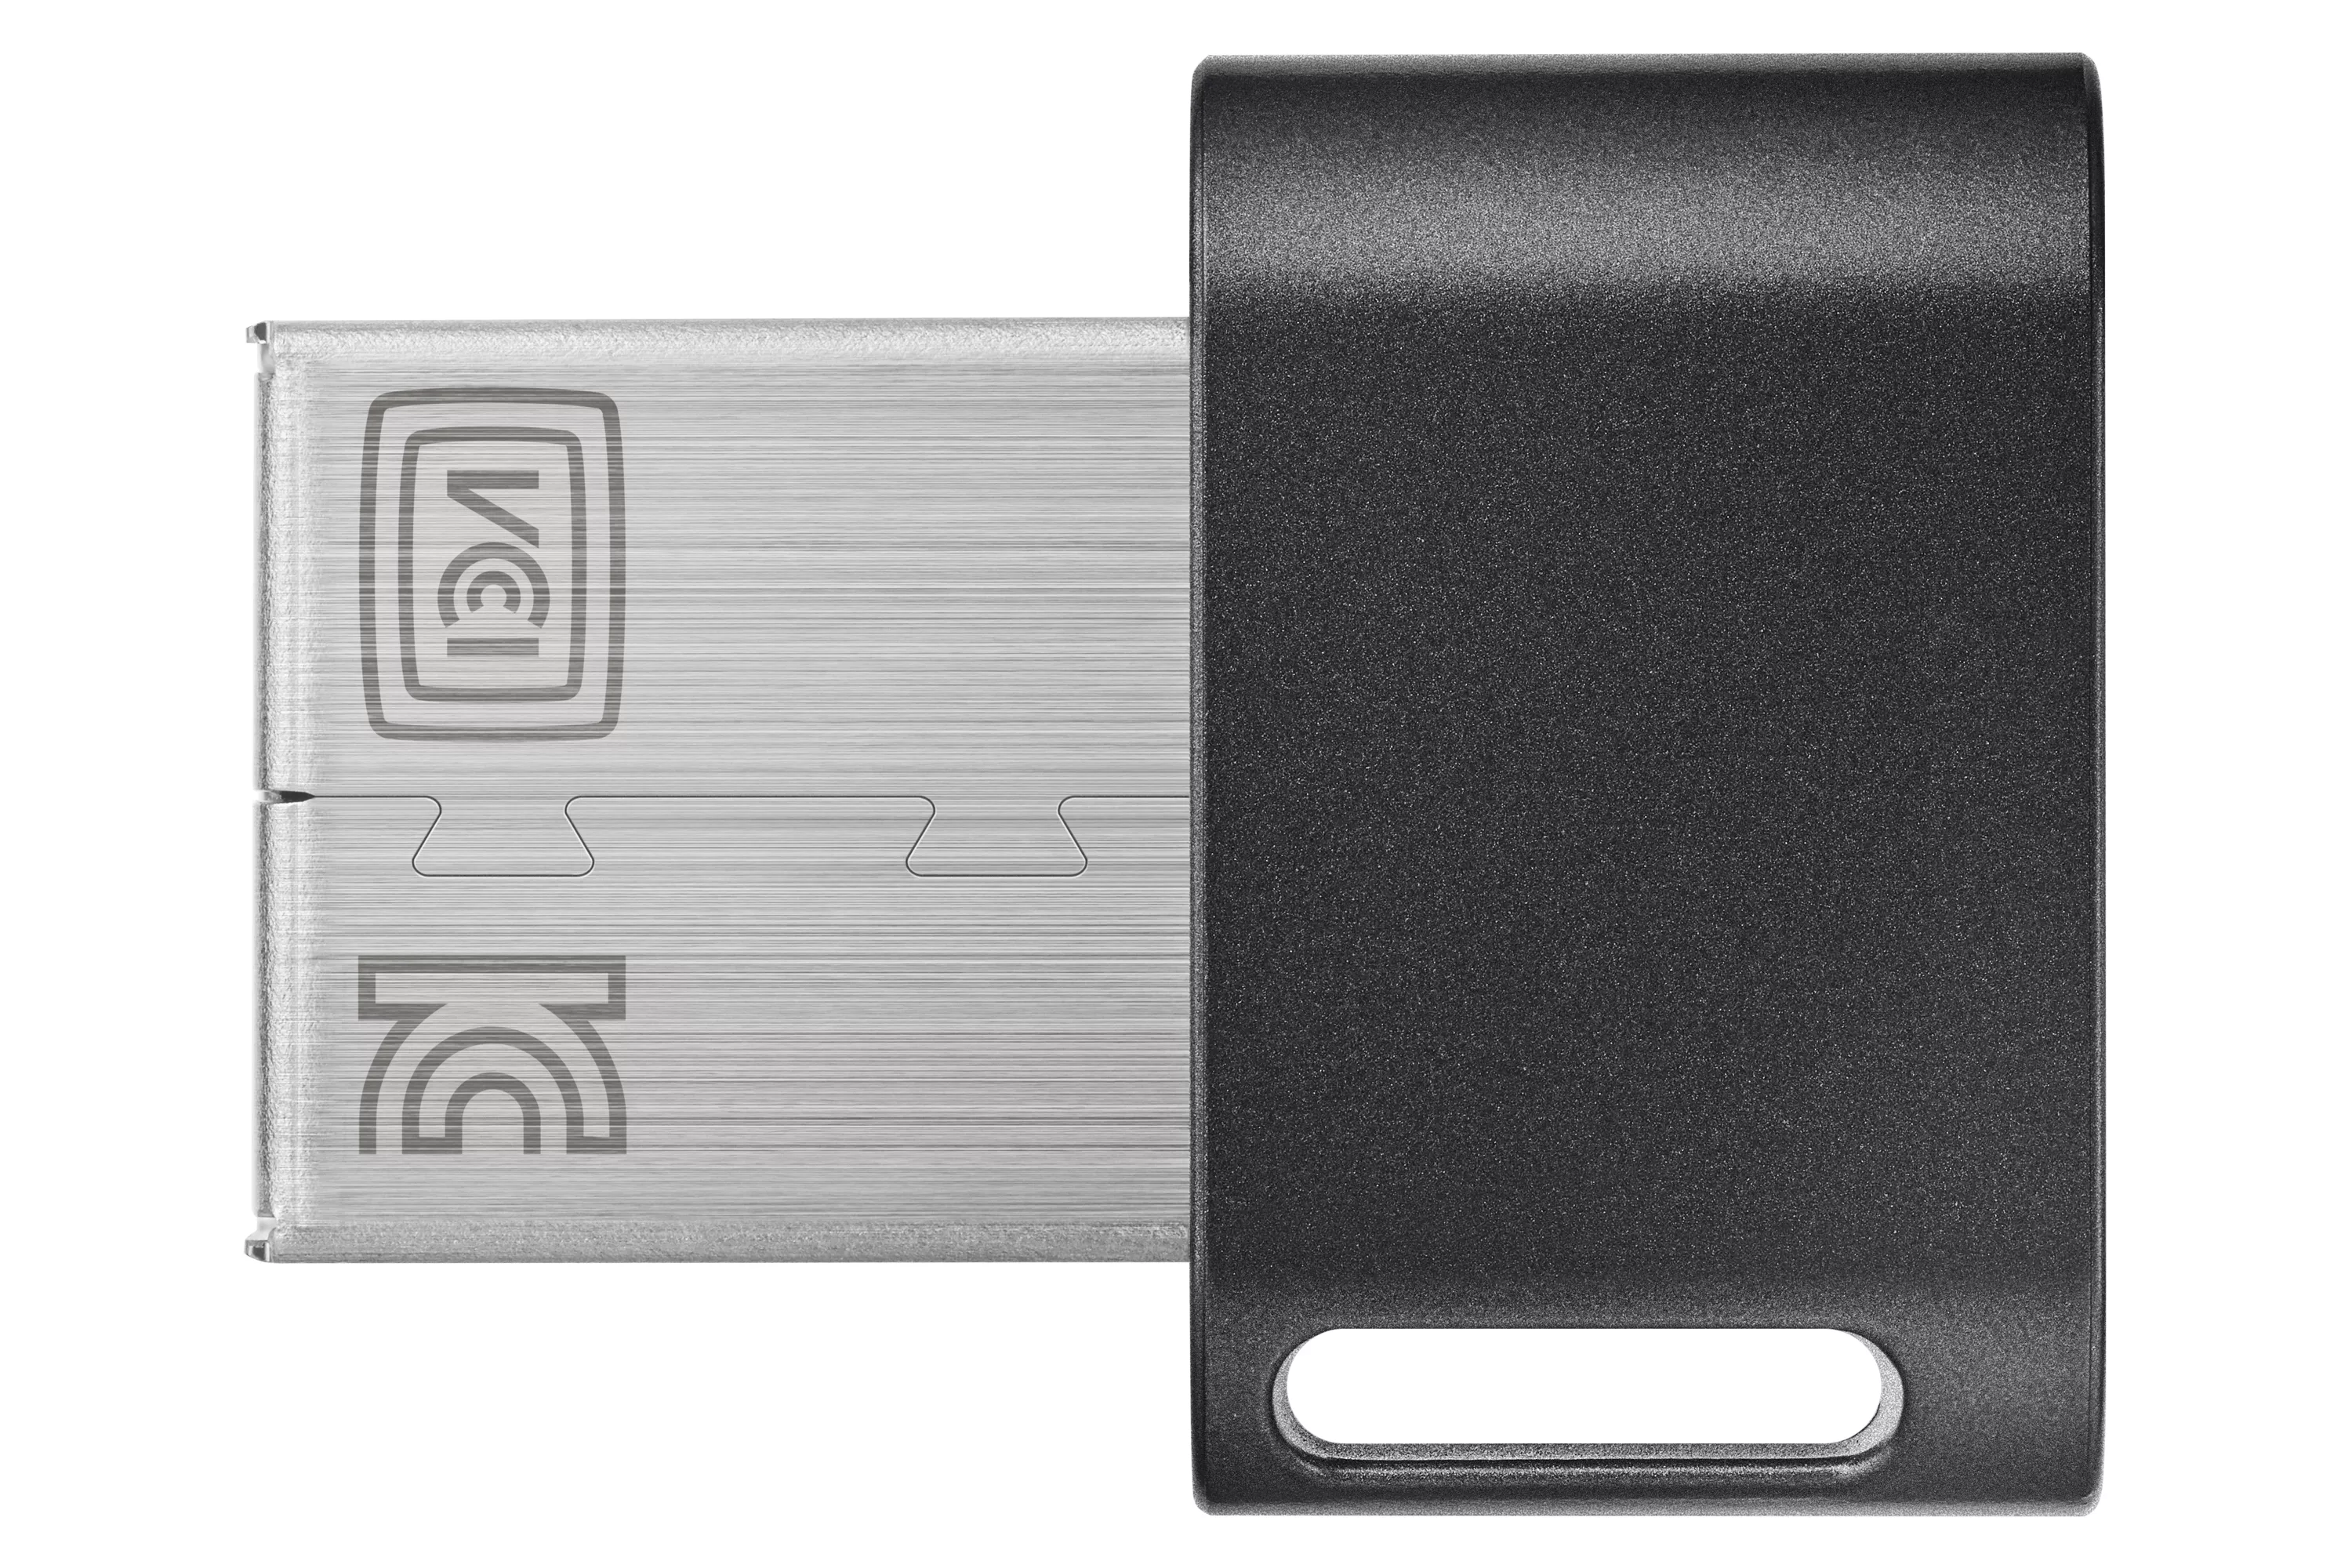 Vente SAMSUNG FIT PLUS 256Go USB 3.1 Samsung au meilleur prix - visuel 2